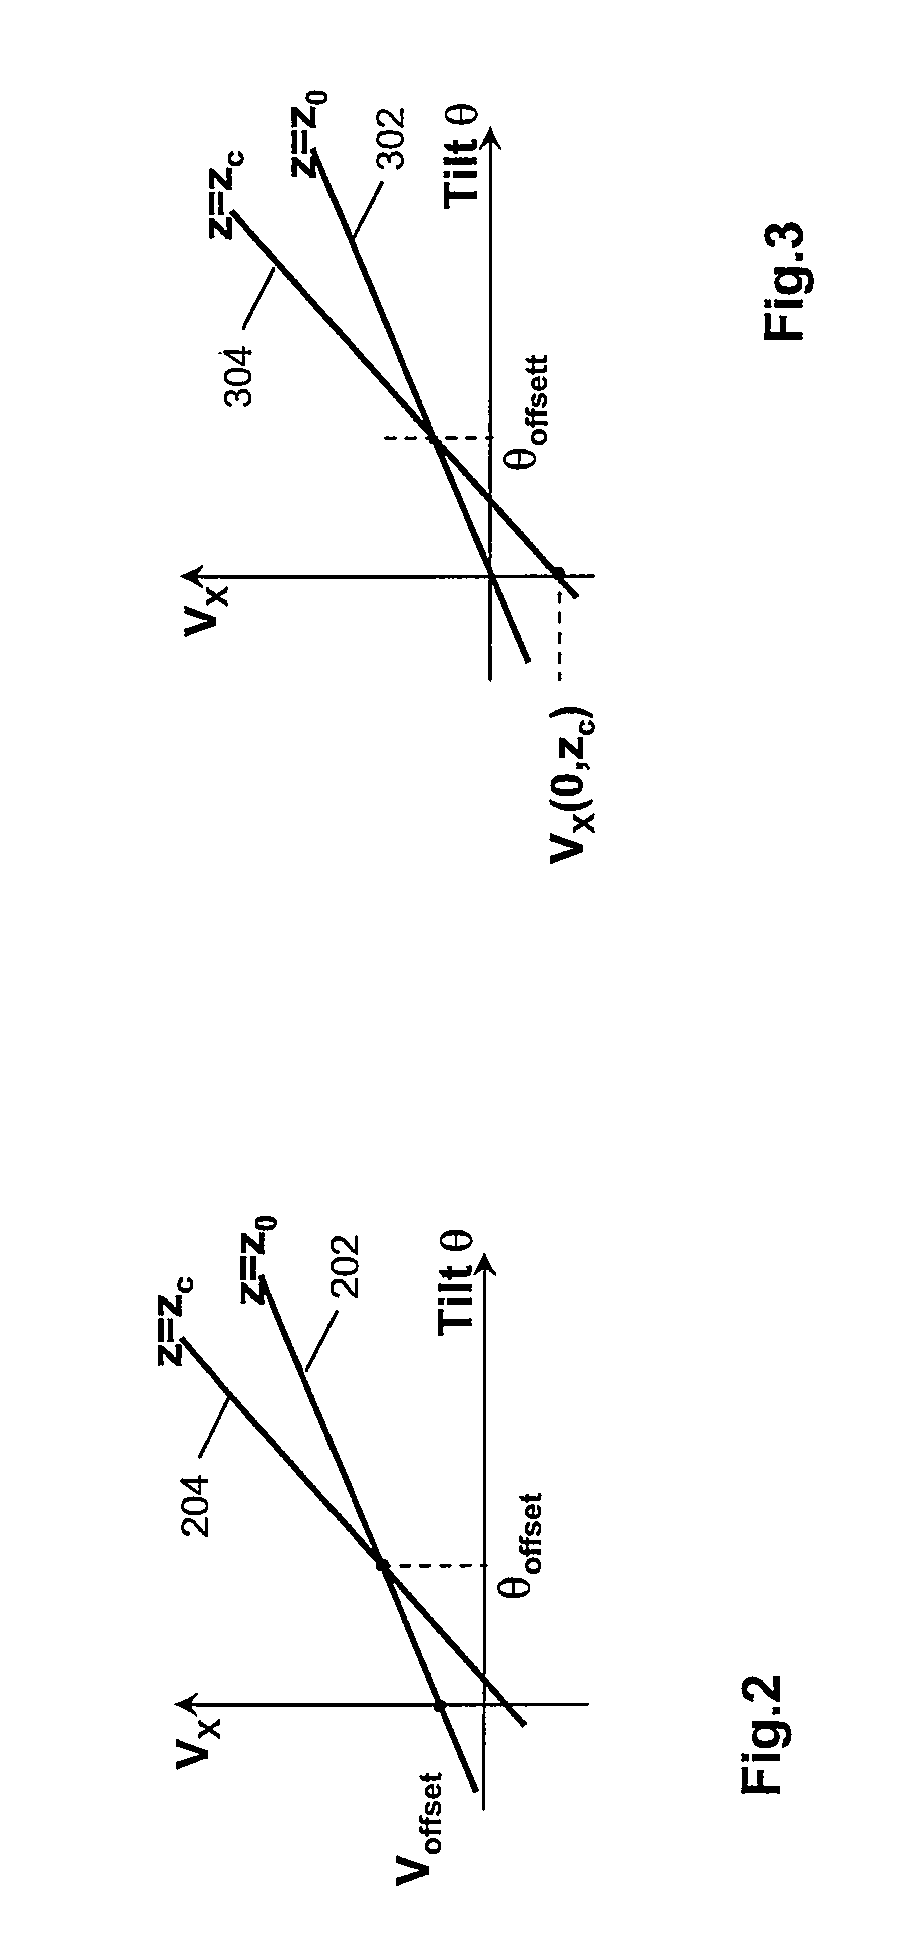 Calibration of an AMR sensor